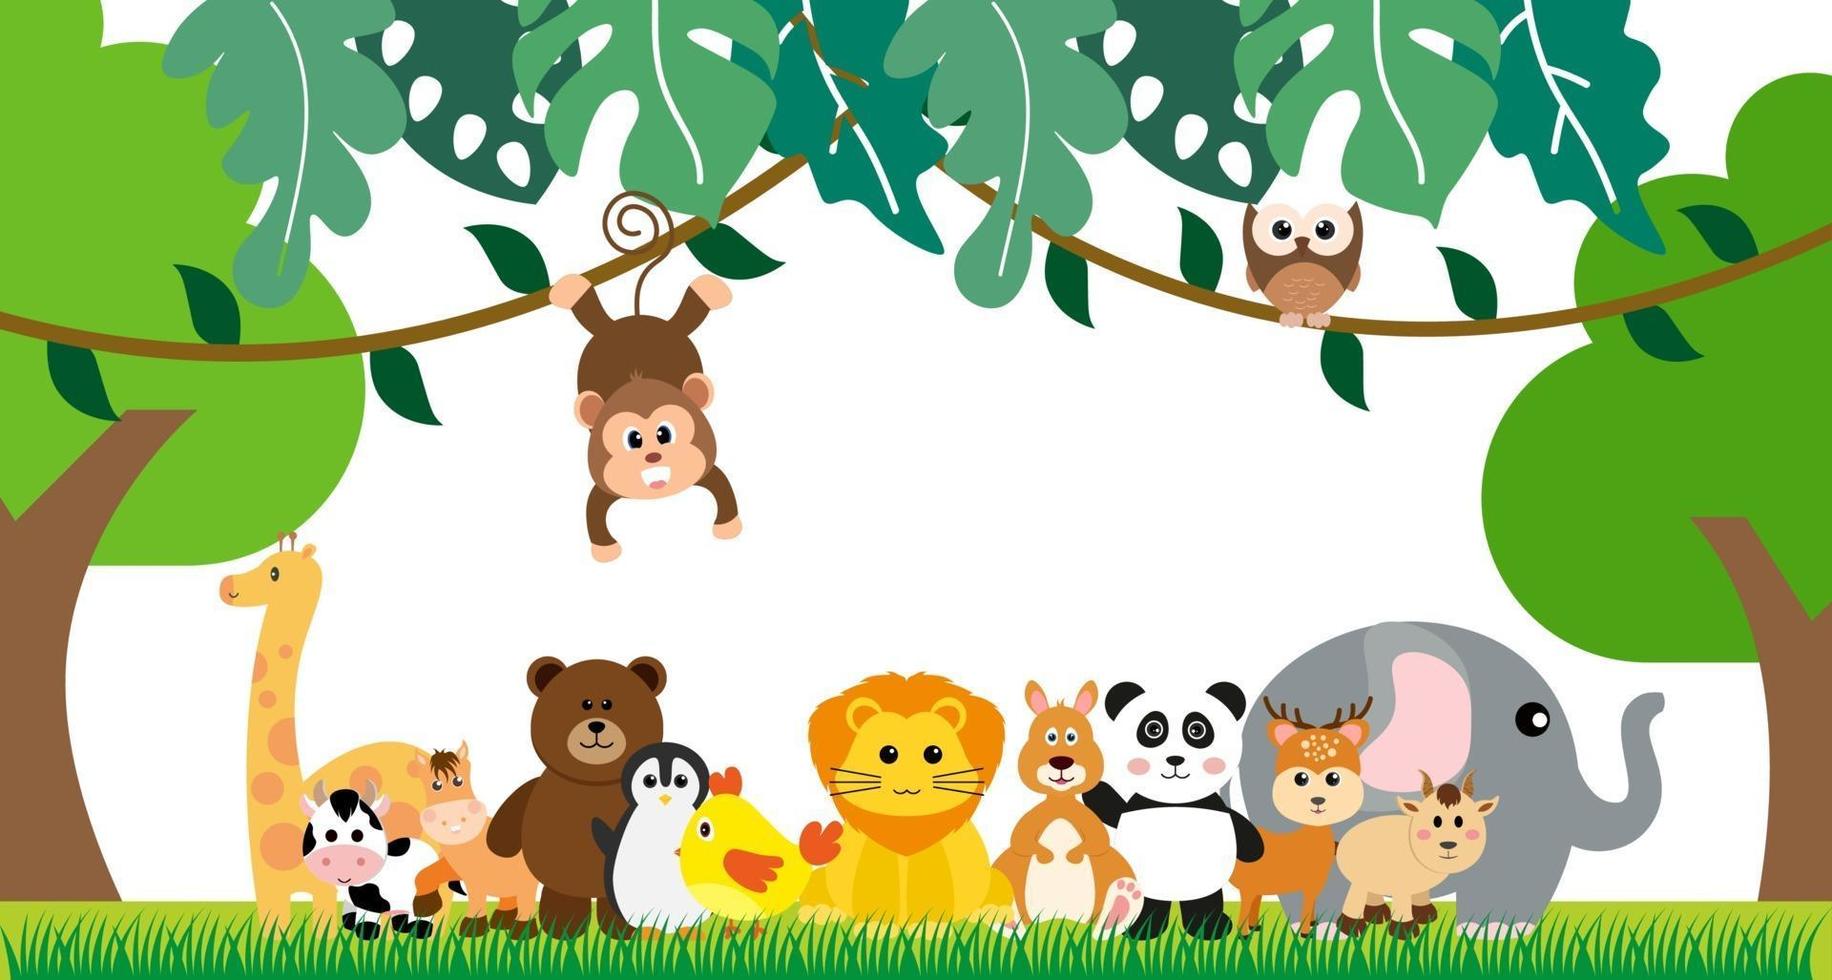 vector lindos animales de la selva en estilo de dibujos animados, animales salvajes, diseños de zoológicos para el fondo, ropa de bebé. personajes dibujados a mano